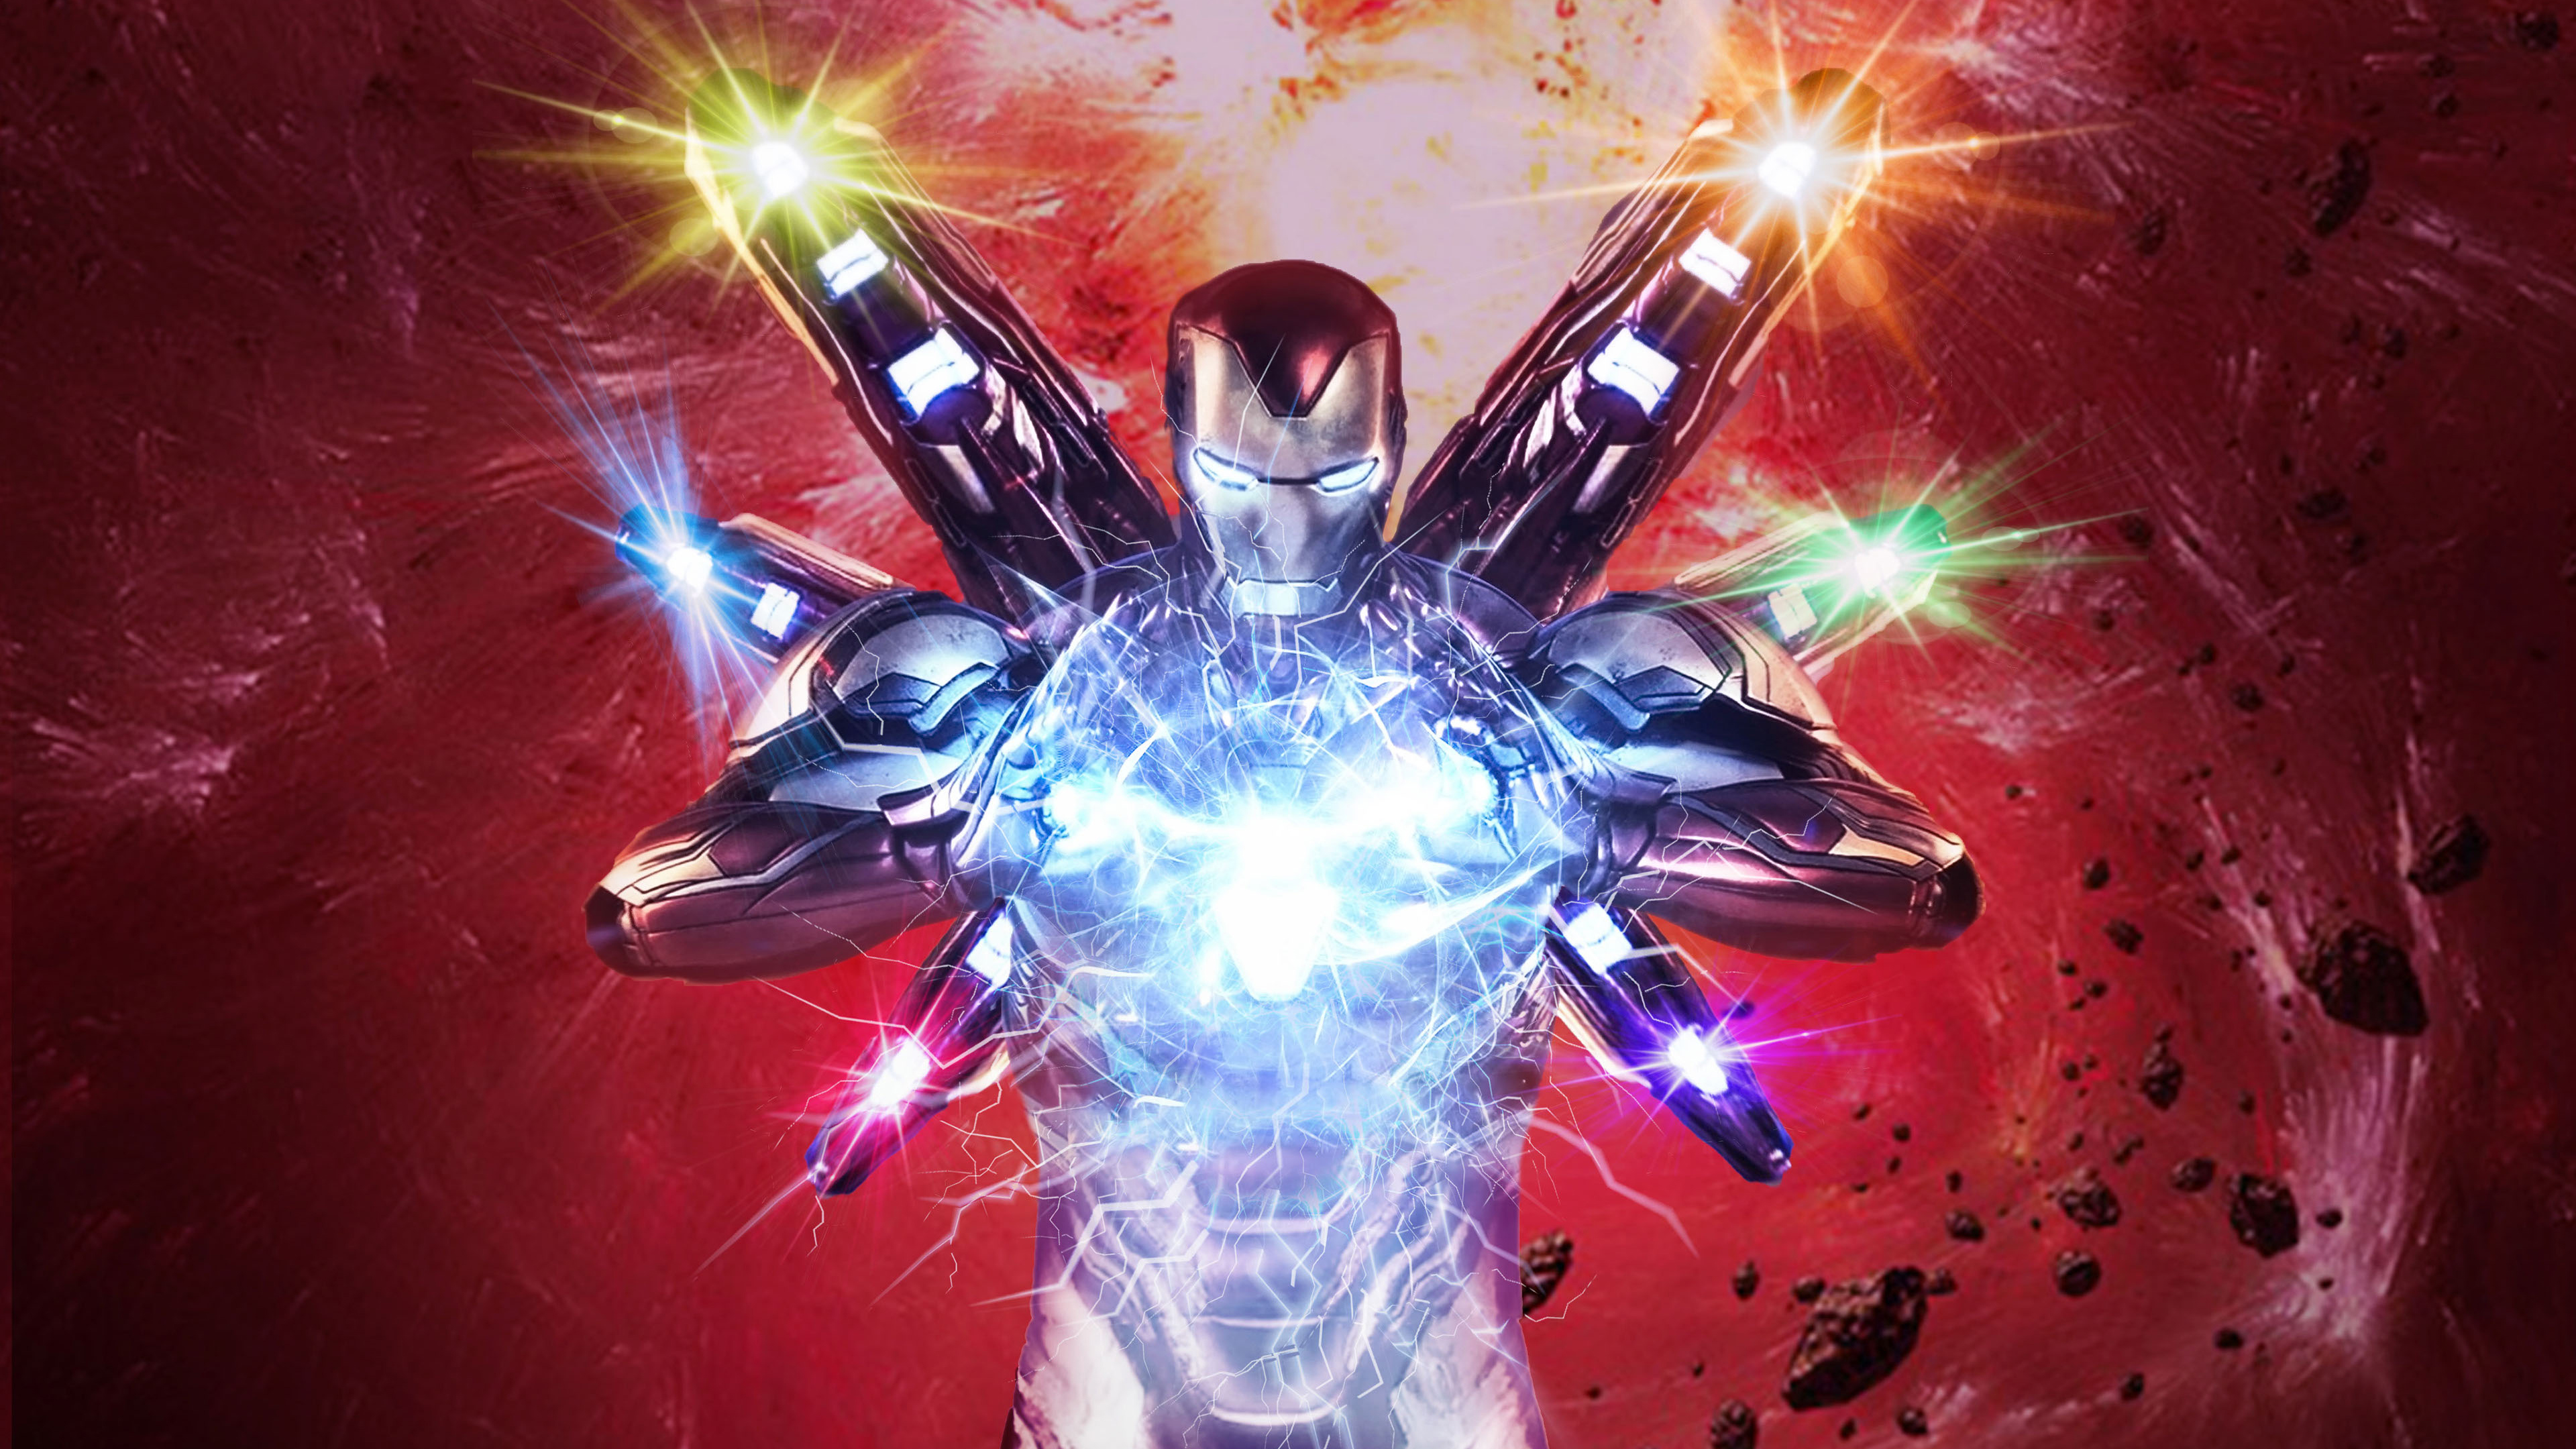 Iron Man in Avengers Endgame 4K